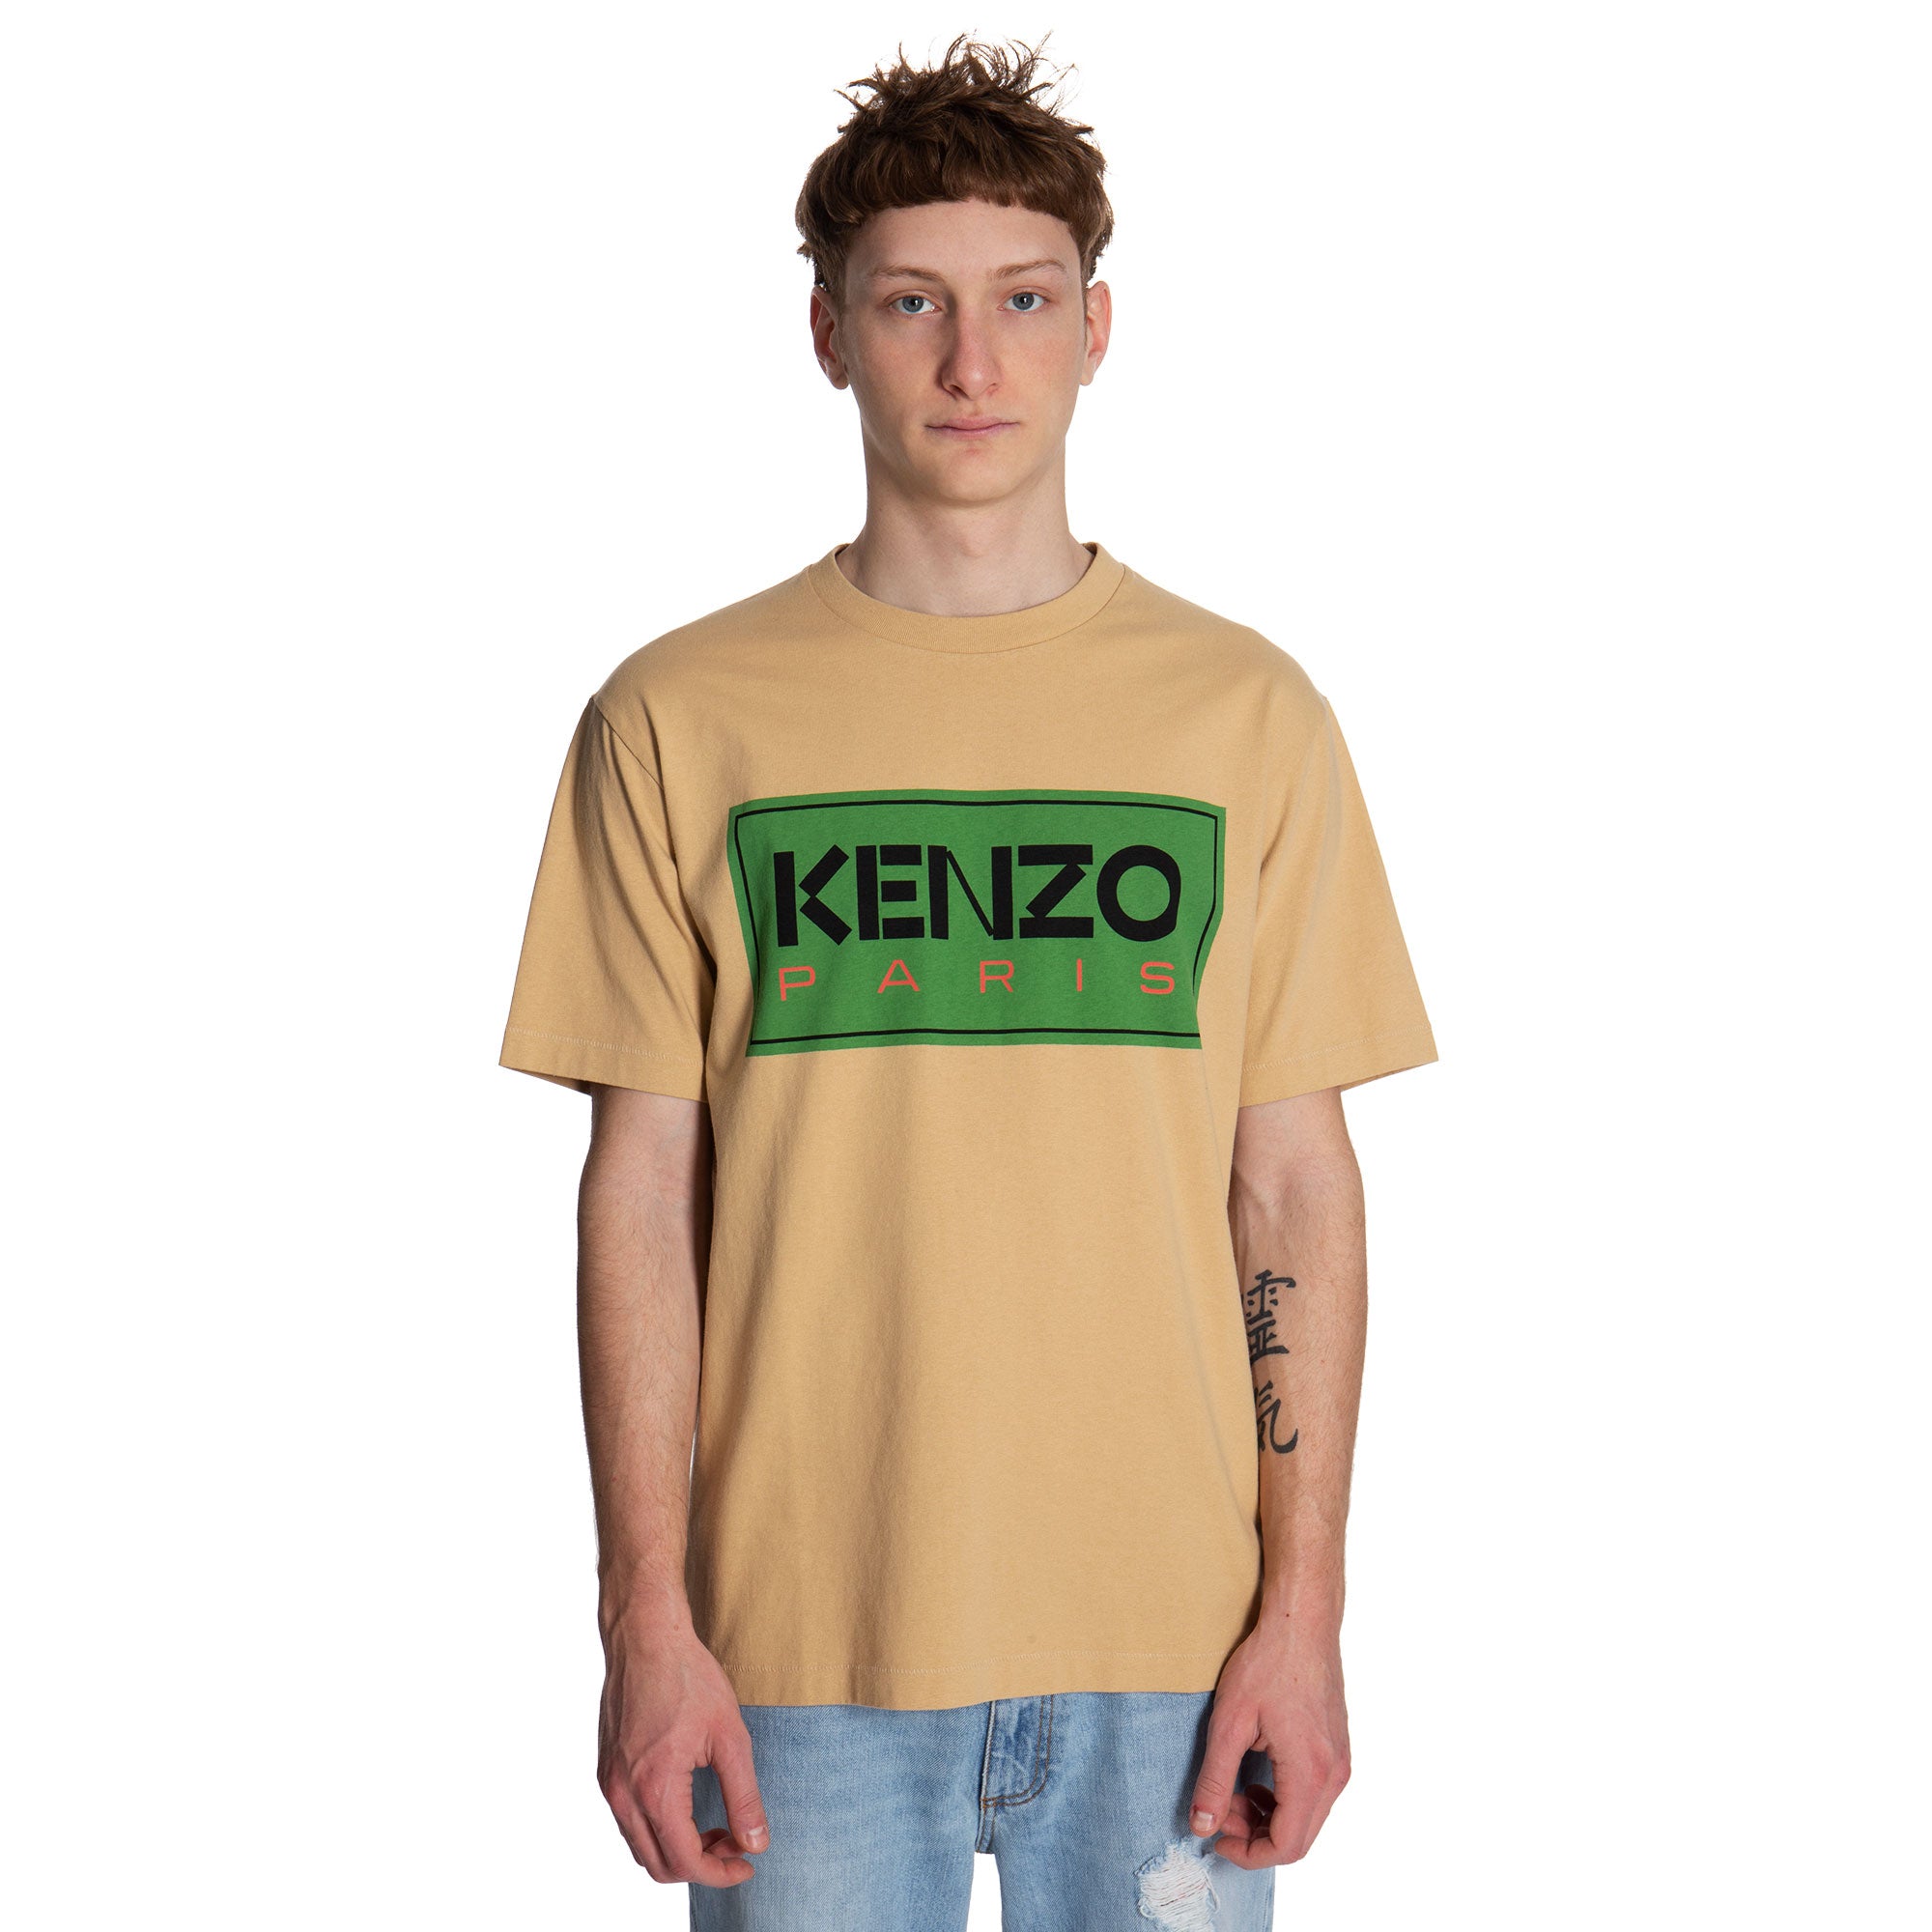 Verenigde Staten van Amerika Ben depressief Om toevlucht te zoeken Vrients.com | Kenzo T-shirts Kenzo Paris Classic T-shirt (Beige)